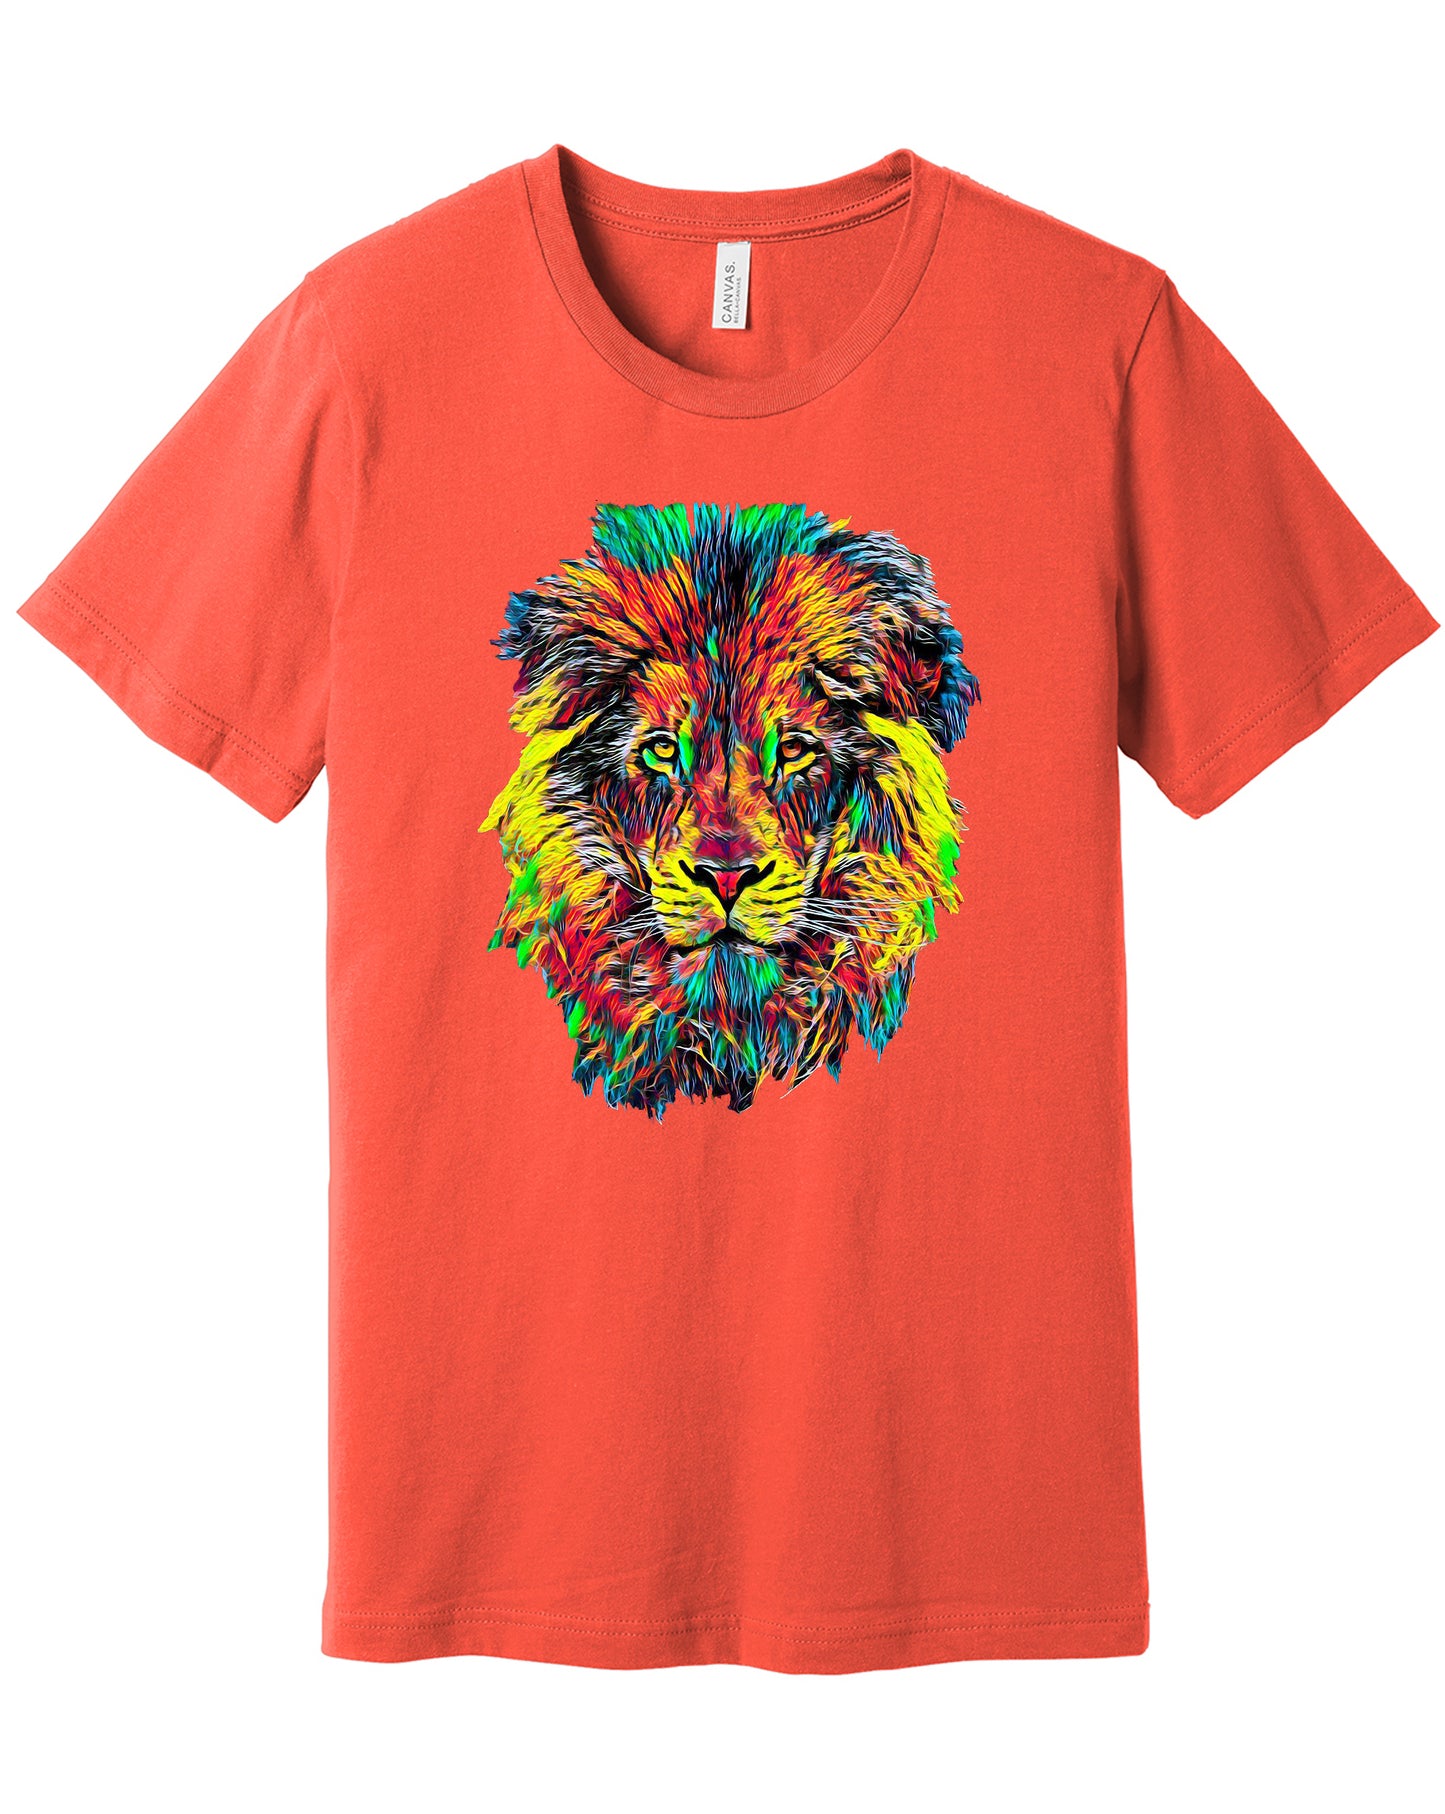 Lion Head - Colorful